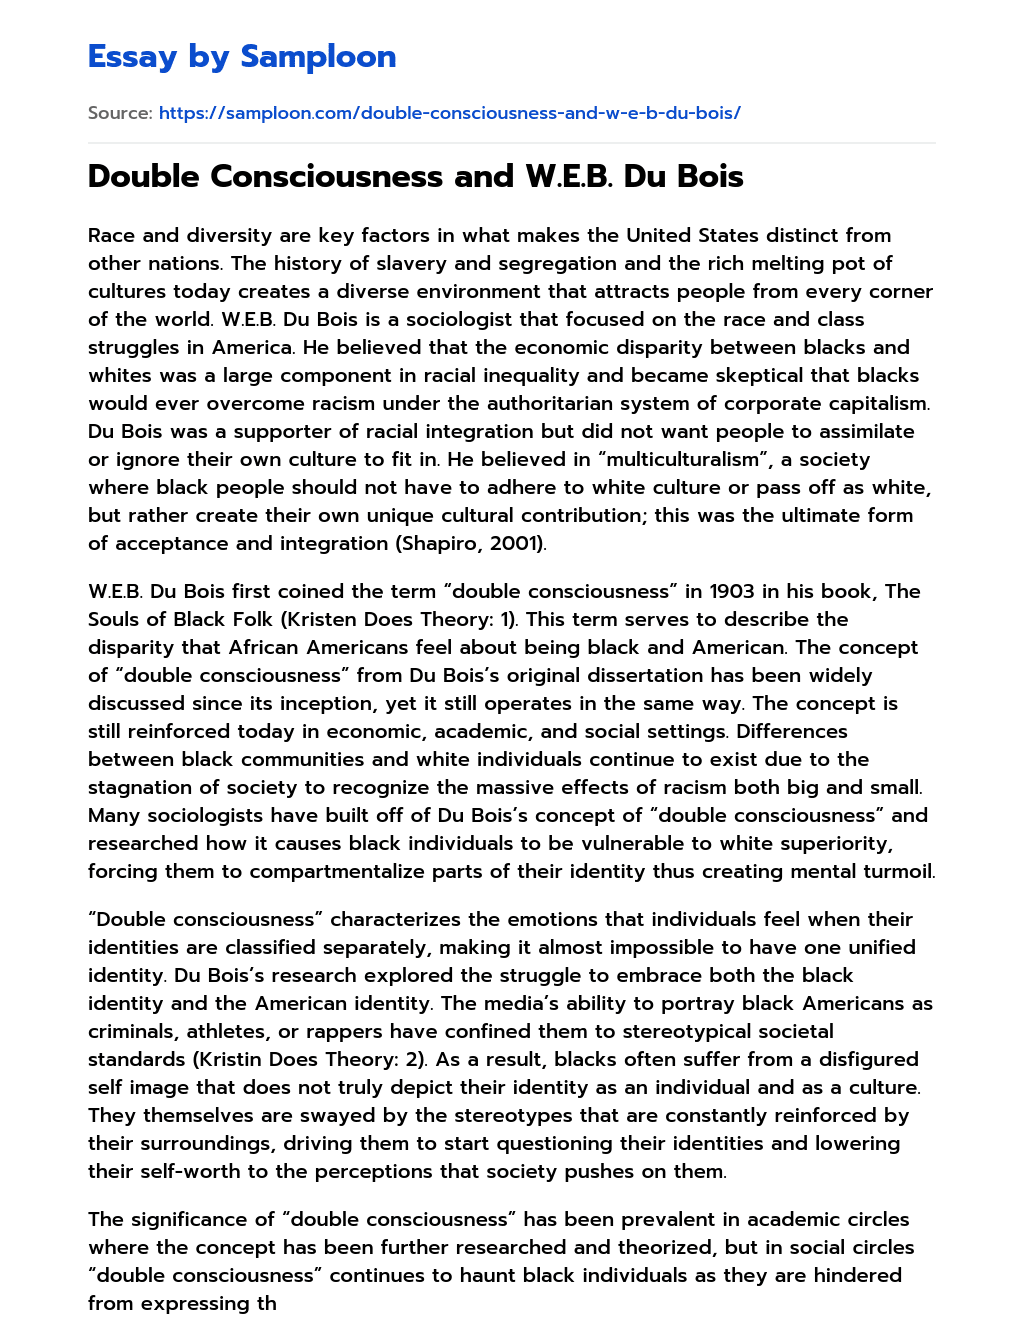 Double Consciousness and W.E.B. Du Bois essay